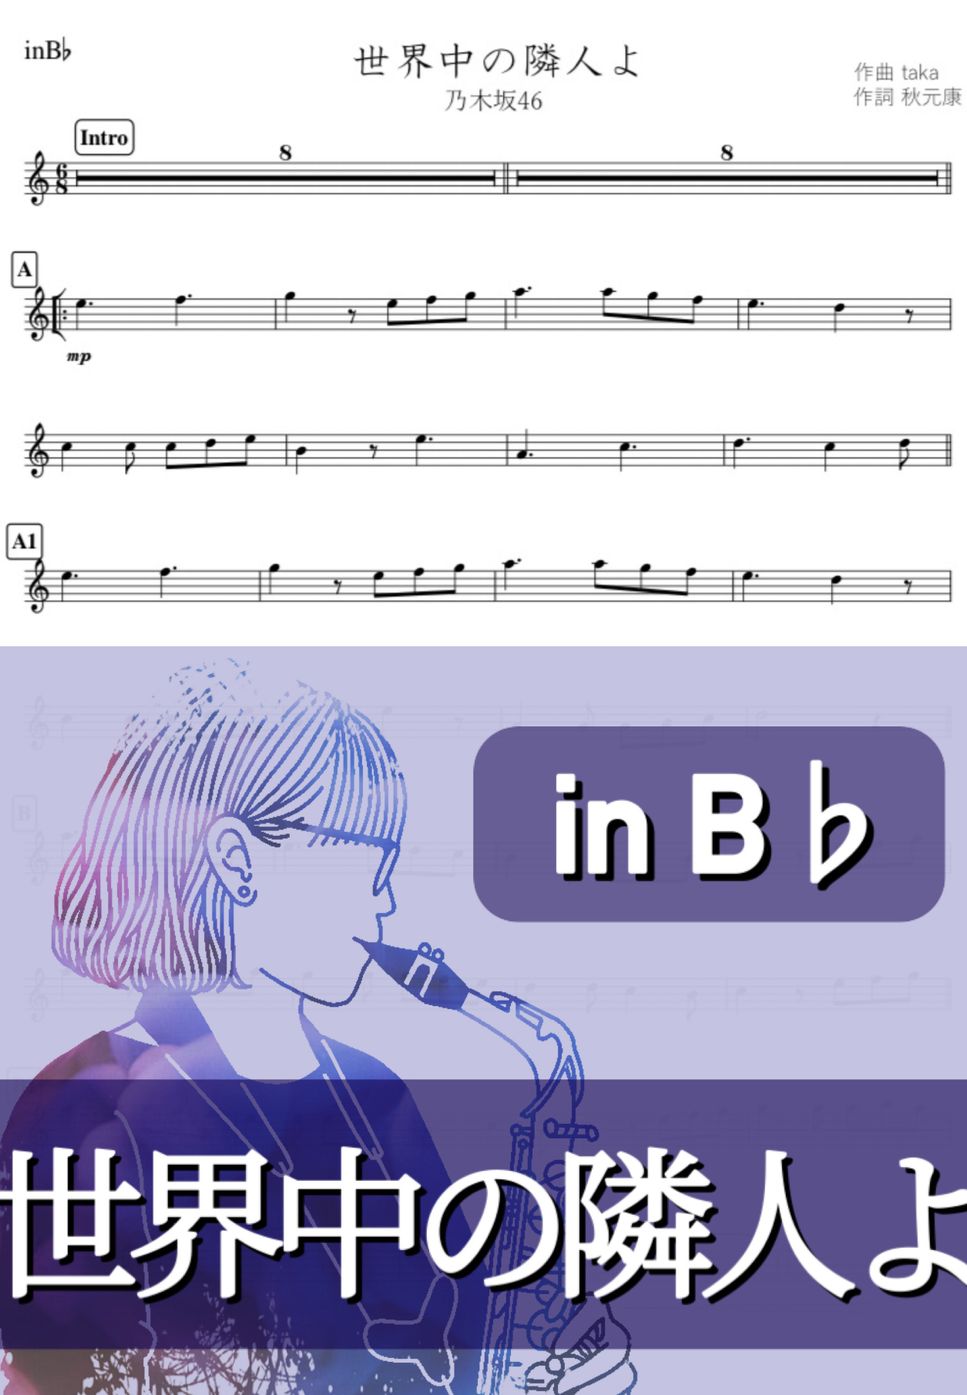 乃木坂46 - 世界中の隣人よ (B♭) by kanamusic